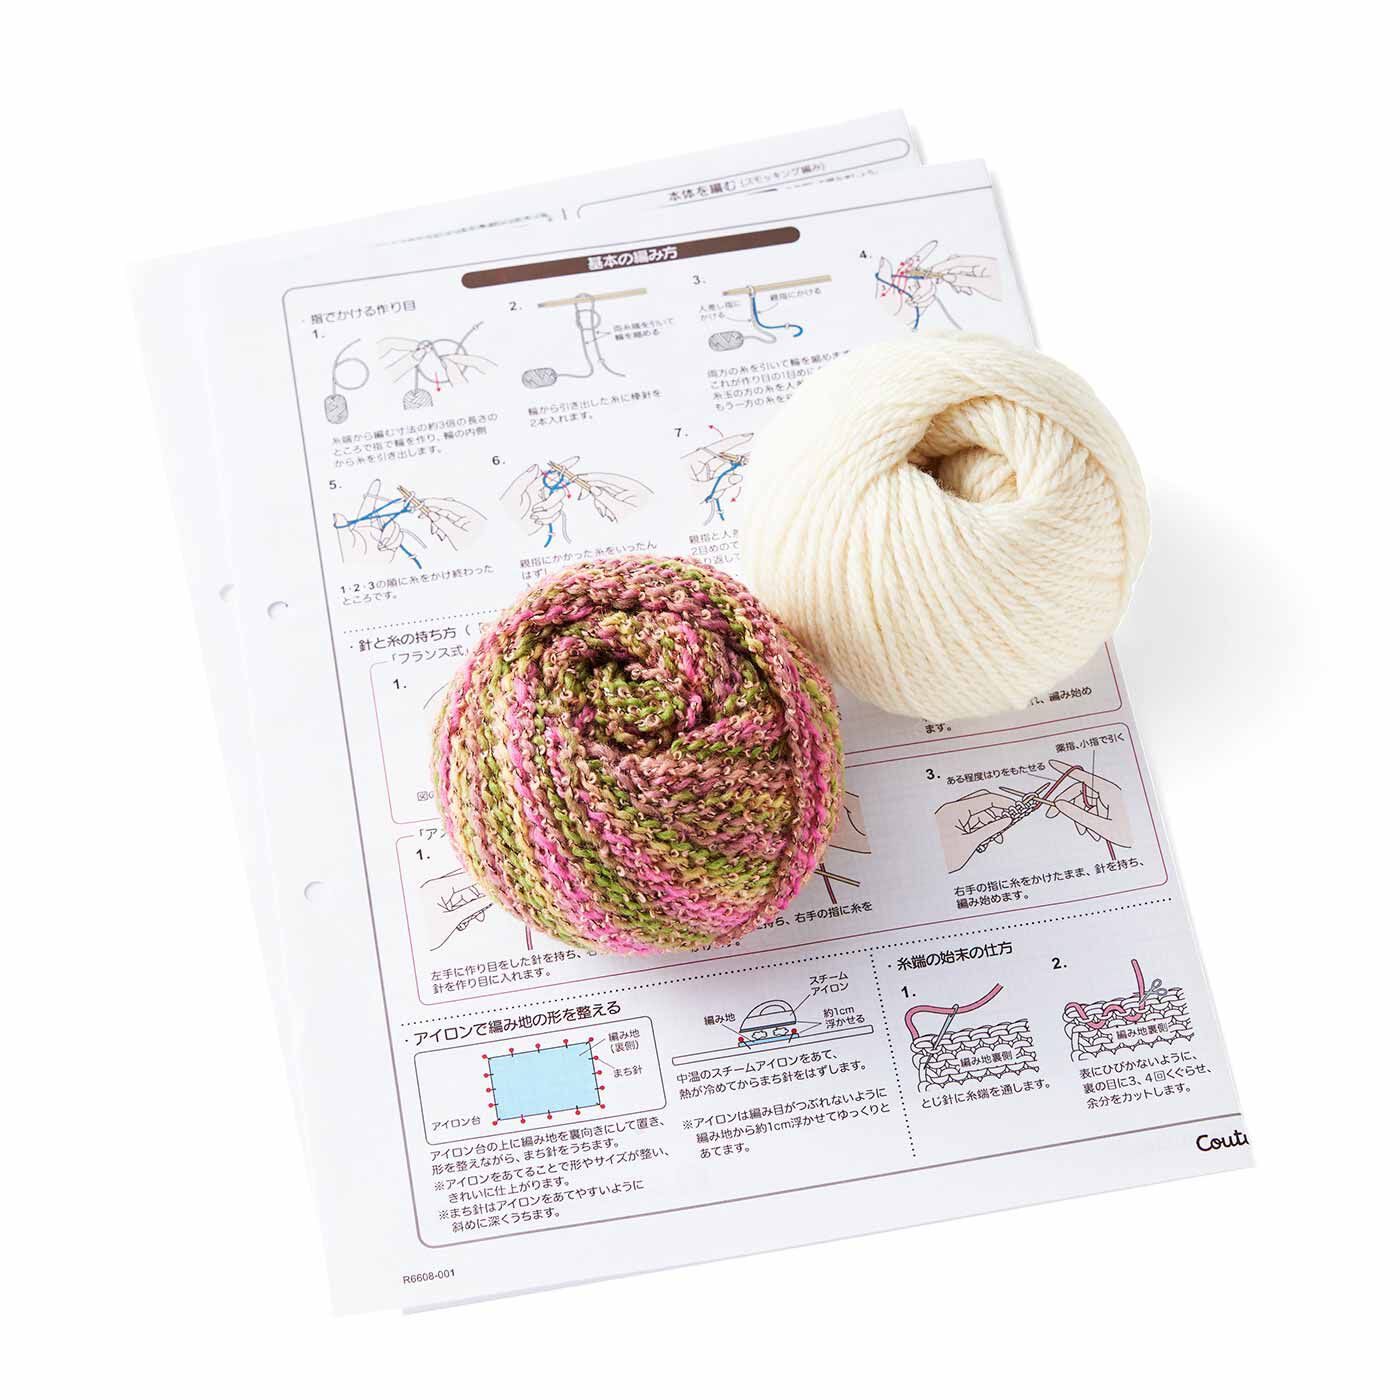 クチュリエ|棒針編みの沼にはまる ユニーク編み地のサンプラーの会|●1回分のお届けキット例です。